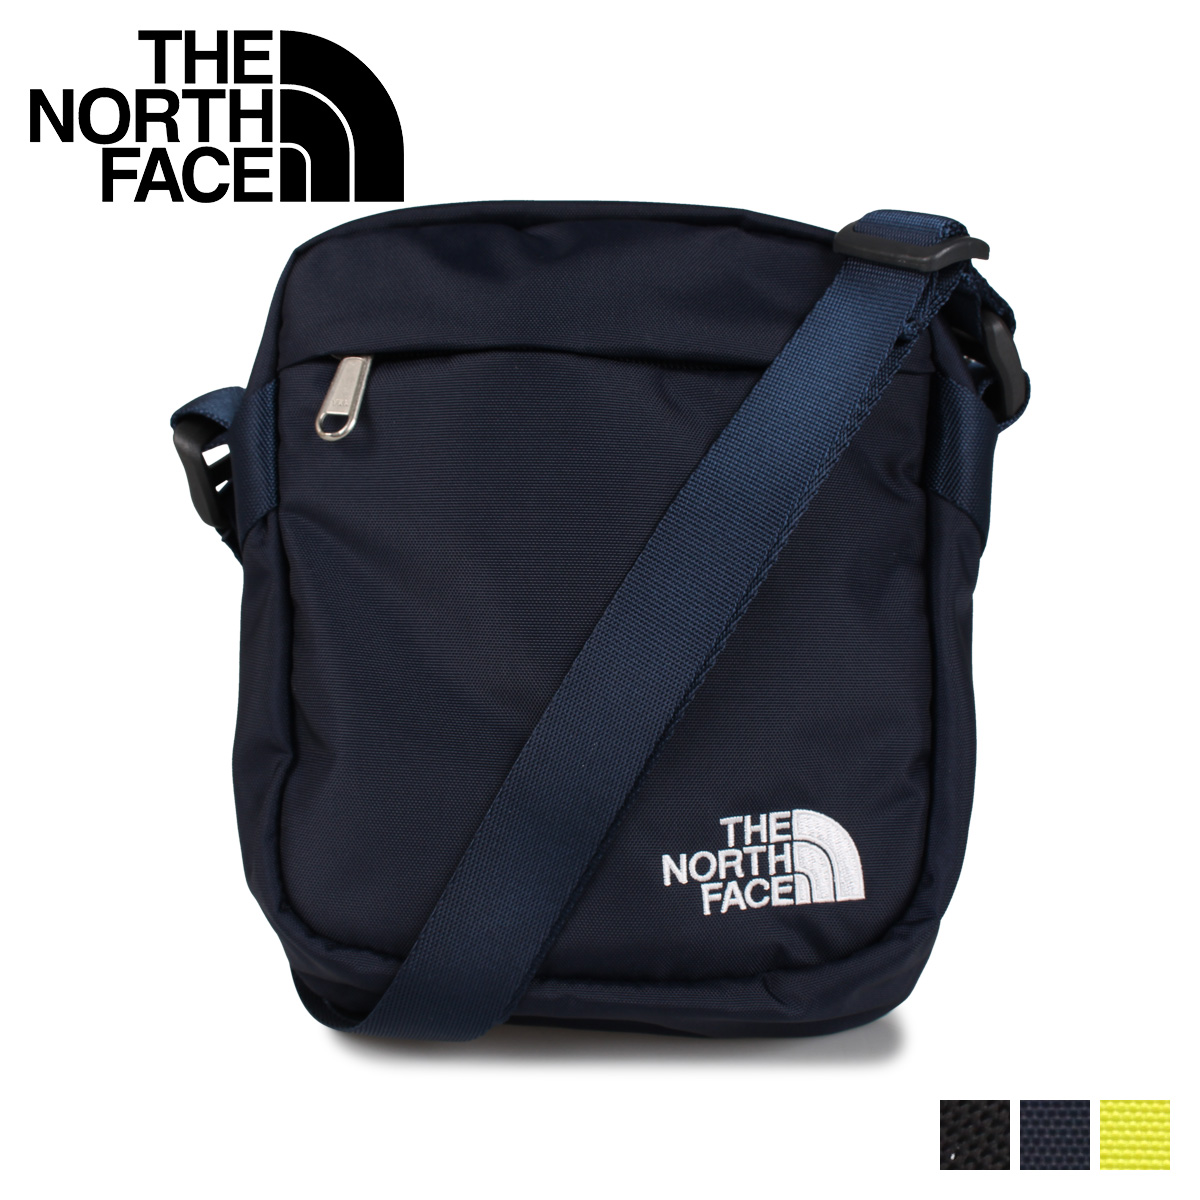 楽天市場 The North Face ノースフェイス バッグ ショルダーバッグ サコッシュ メンズ レディース 3 2l Convertible Shoulder Bag ブラック ネイビー イエロー 黒 Nf0a3bxb シュガーオンラインショップ